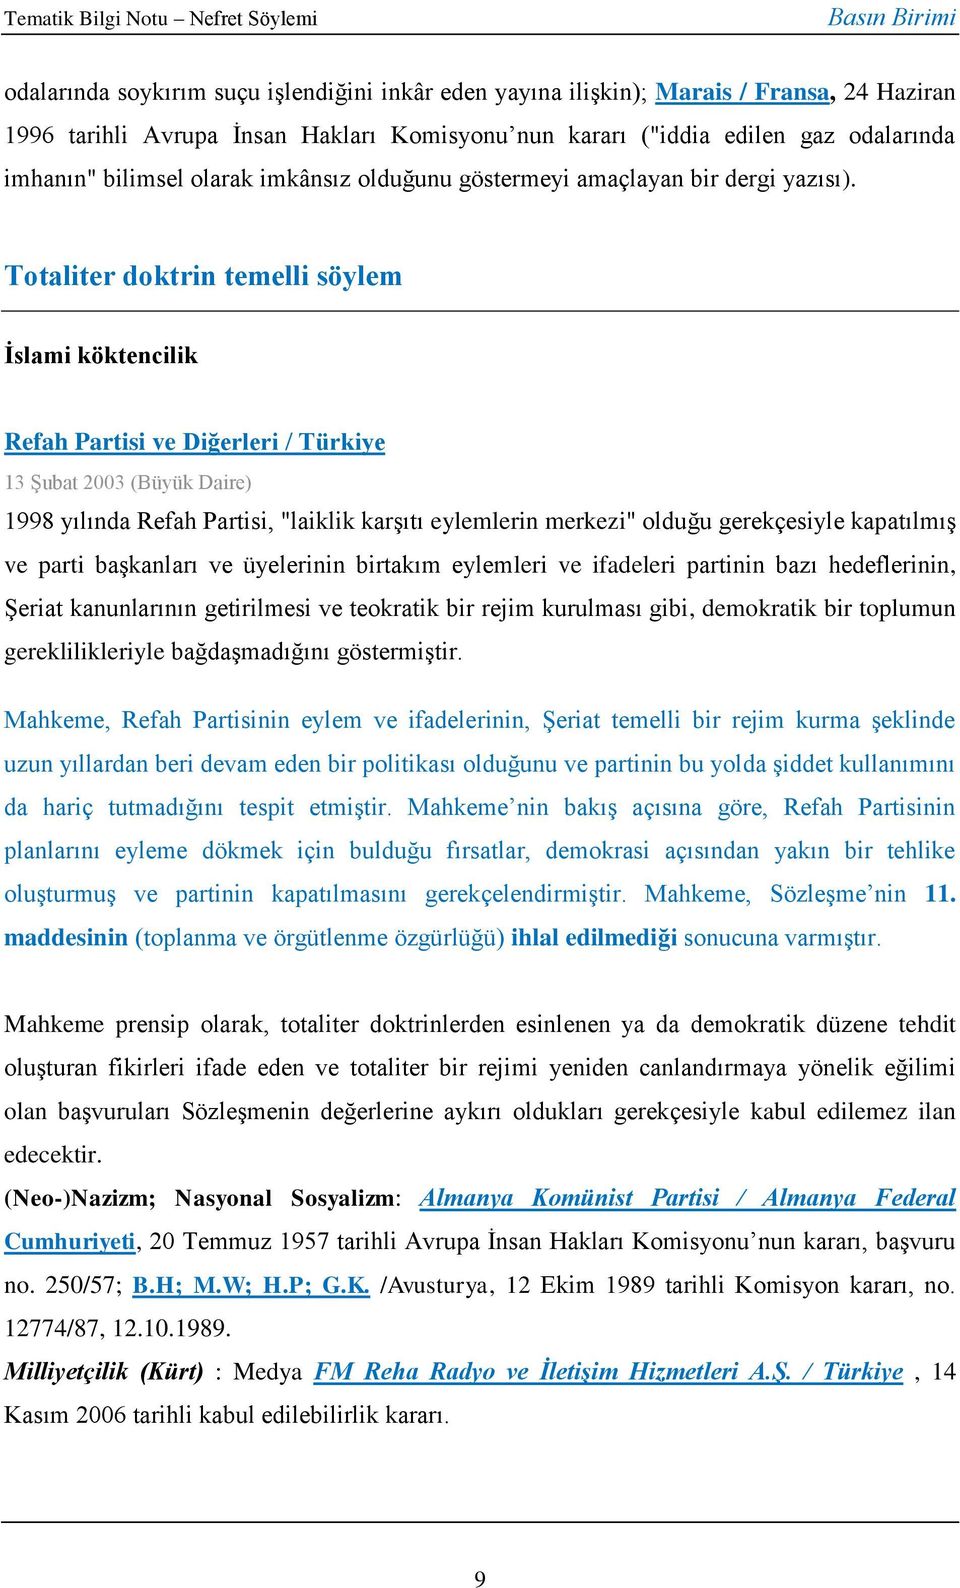 Totaliter doktrin temelli söylem İslami köktencilik Refah Partisi ve Diğerleri / Türkiye 13 Şubat 2003 (Büyük Daire) 1998 yılında Refah Partisi, "laiklik karşıtı eylemlerin merkezi" olduğu